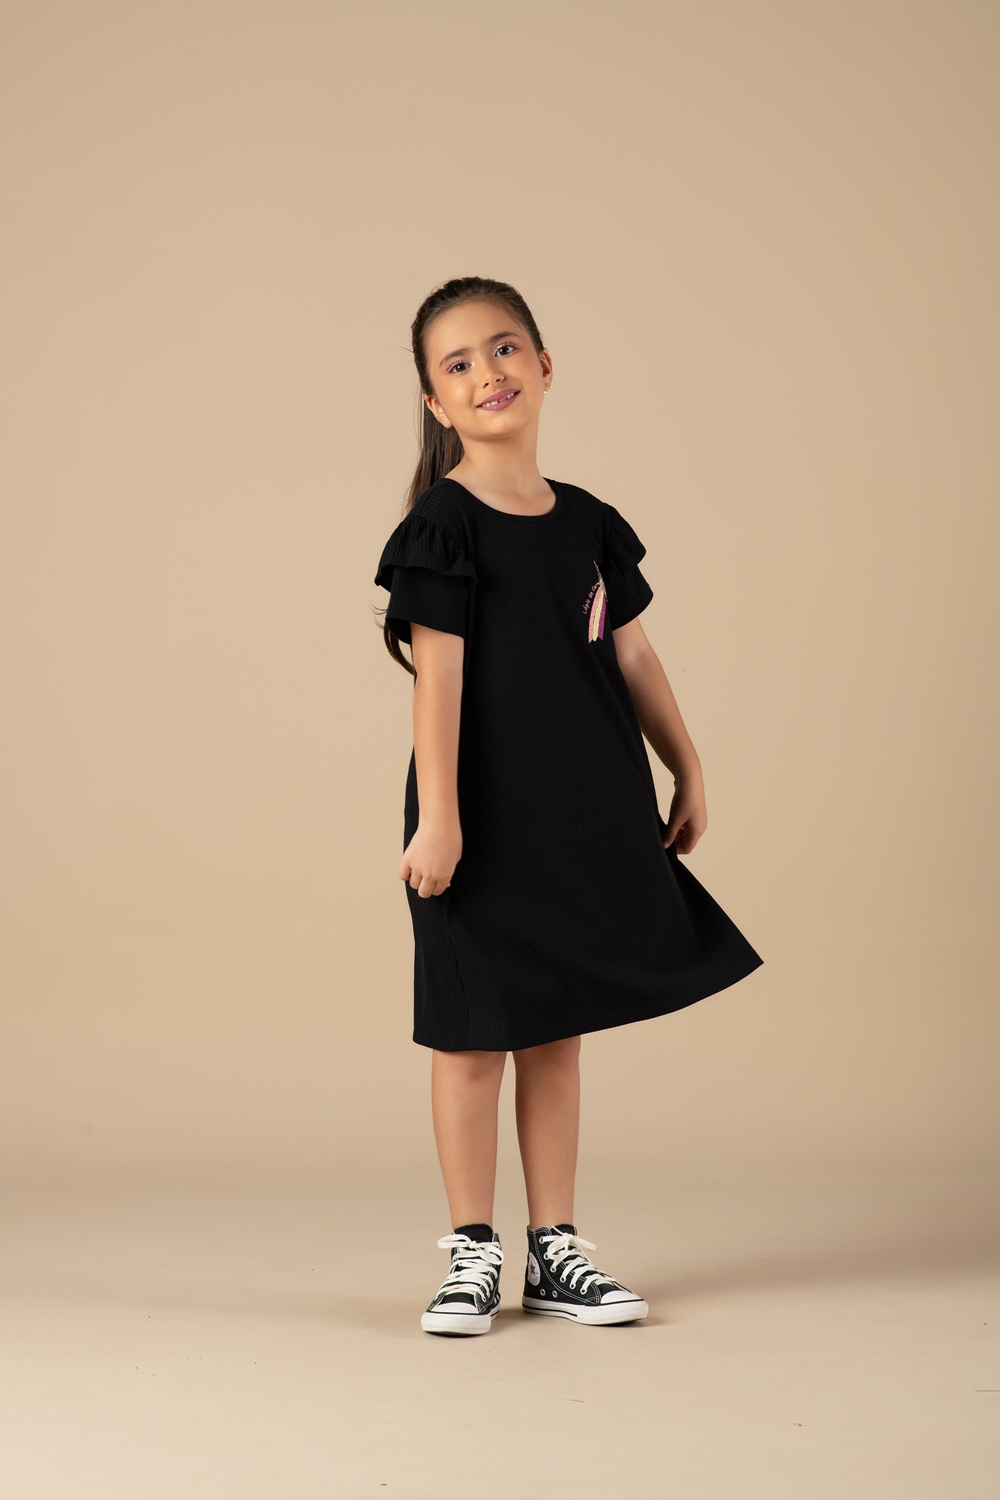 Vestido infantil preto canelado com aplicação de estrela no peito - Lápis de Cor - Moda Infantil